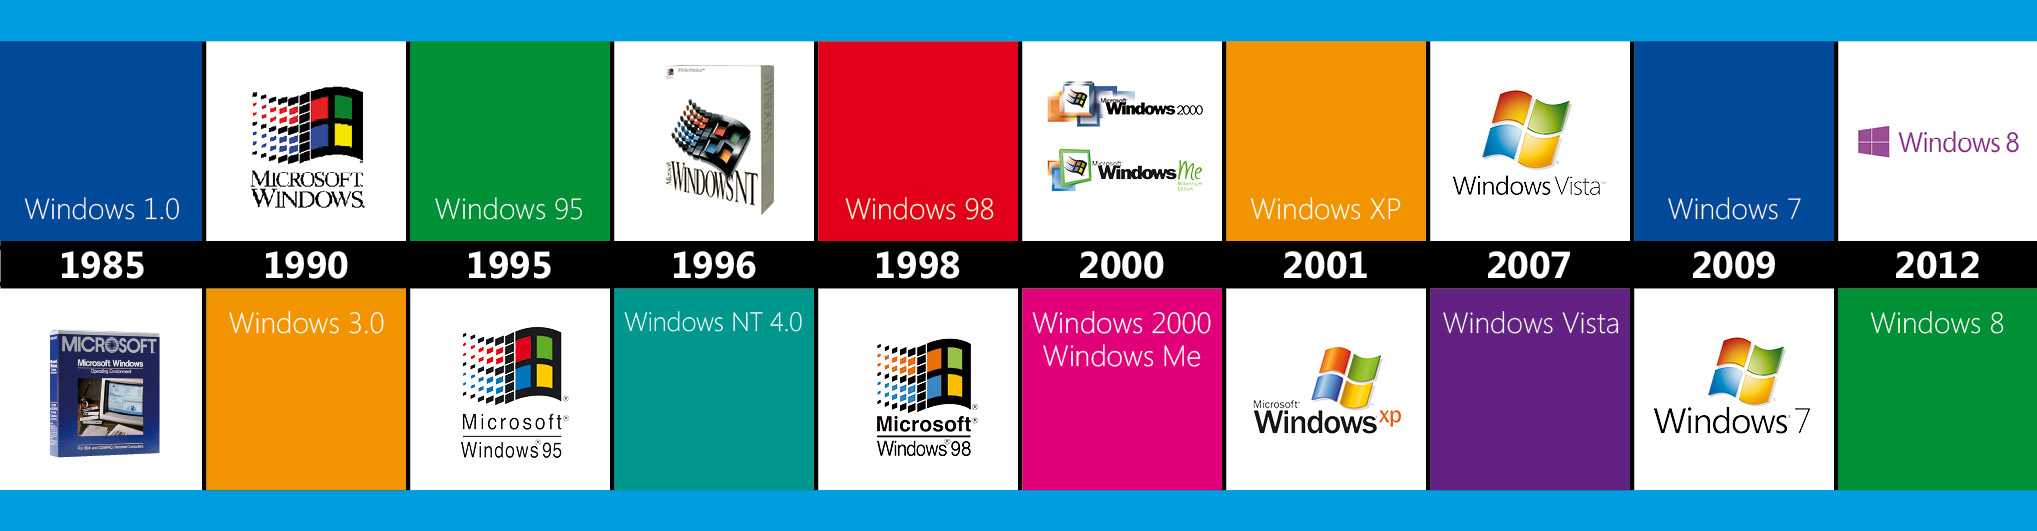 Хронология операционных систем Windows